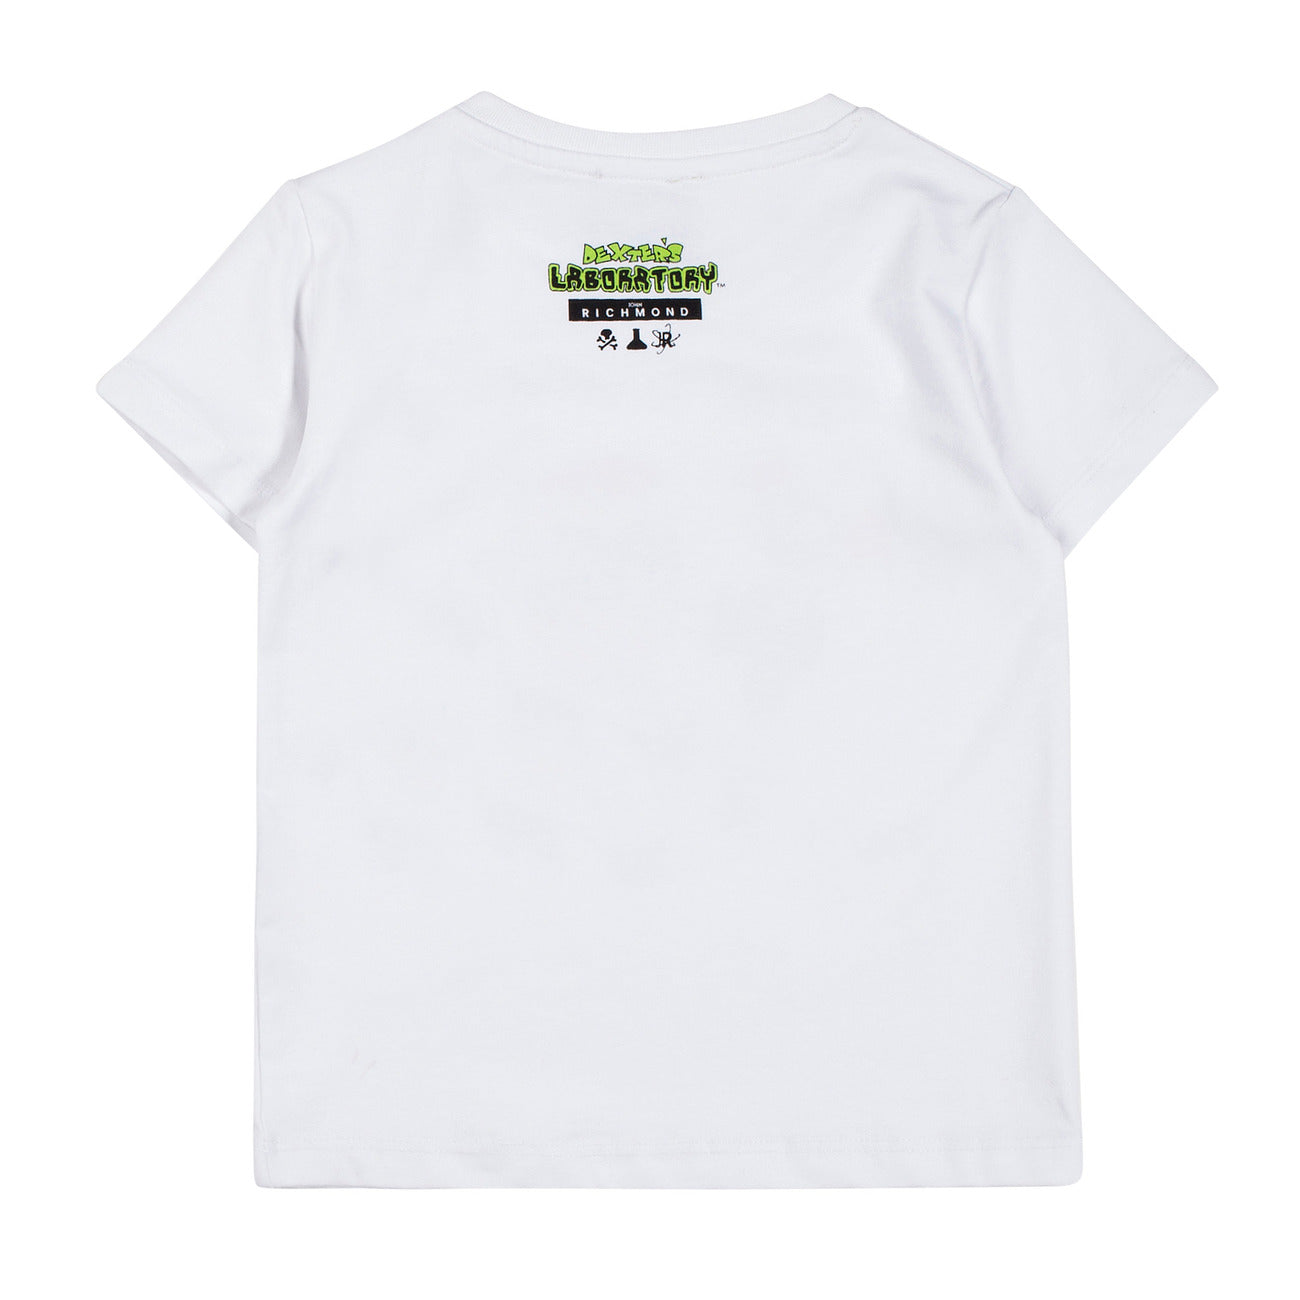 T-shirt Richmond RIP20142TS in cotone con stampa sul fronte e logo sul retro del collo